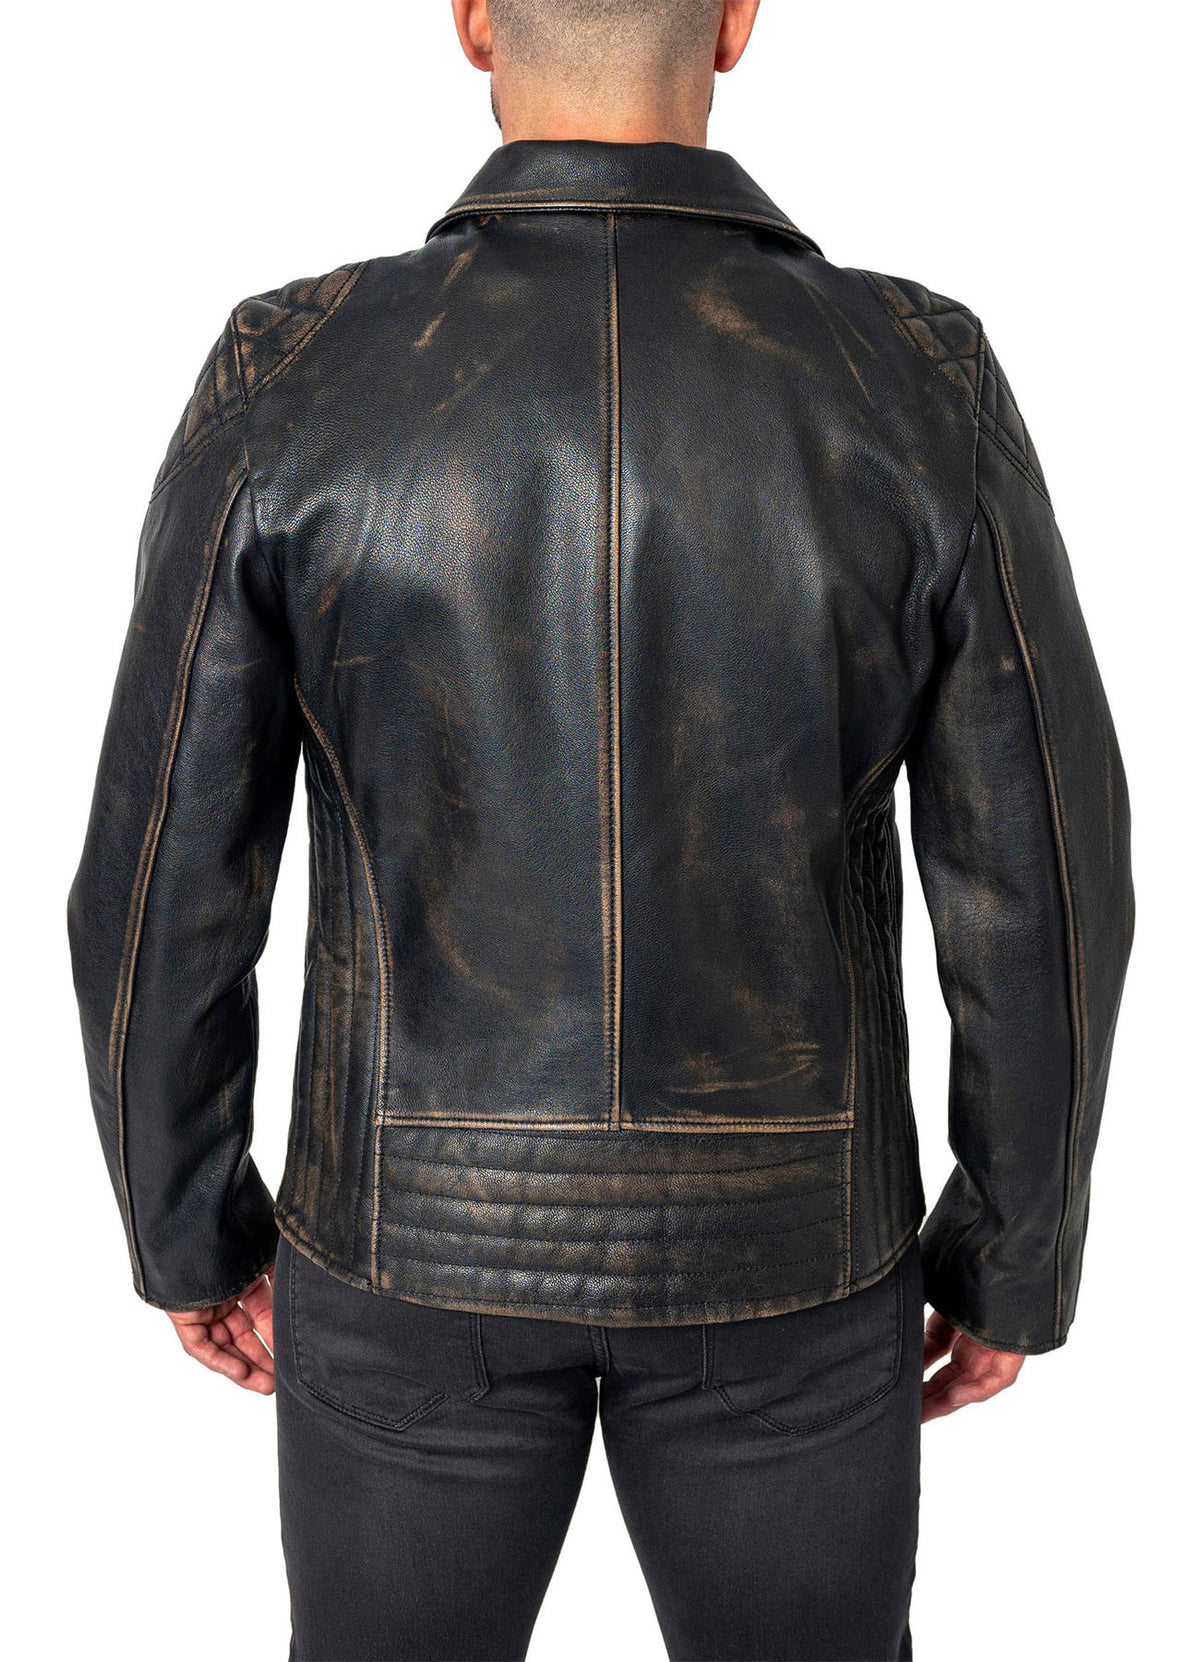 Mens Distressed Black Biker Leather Jacket | Shop Now!